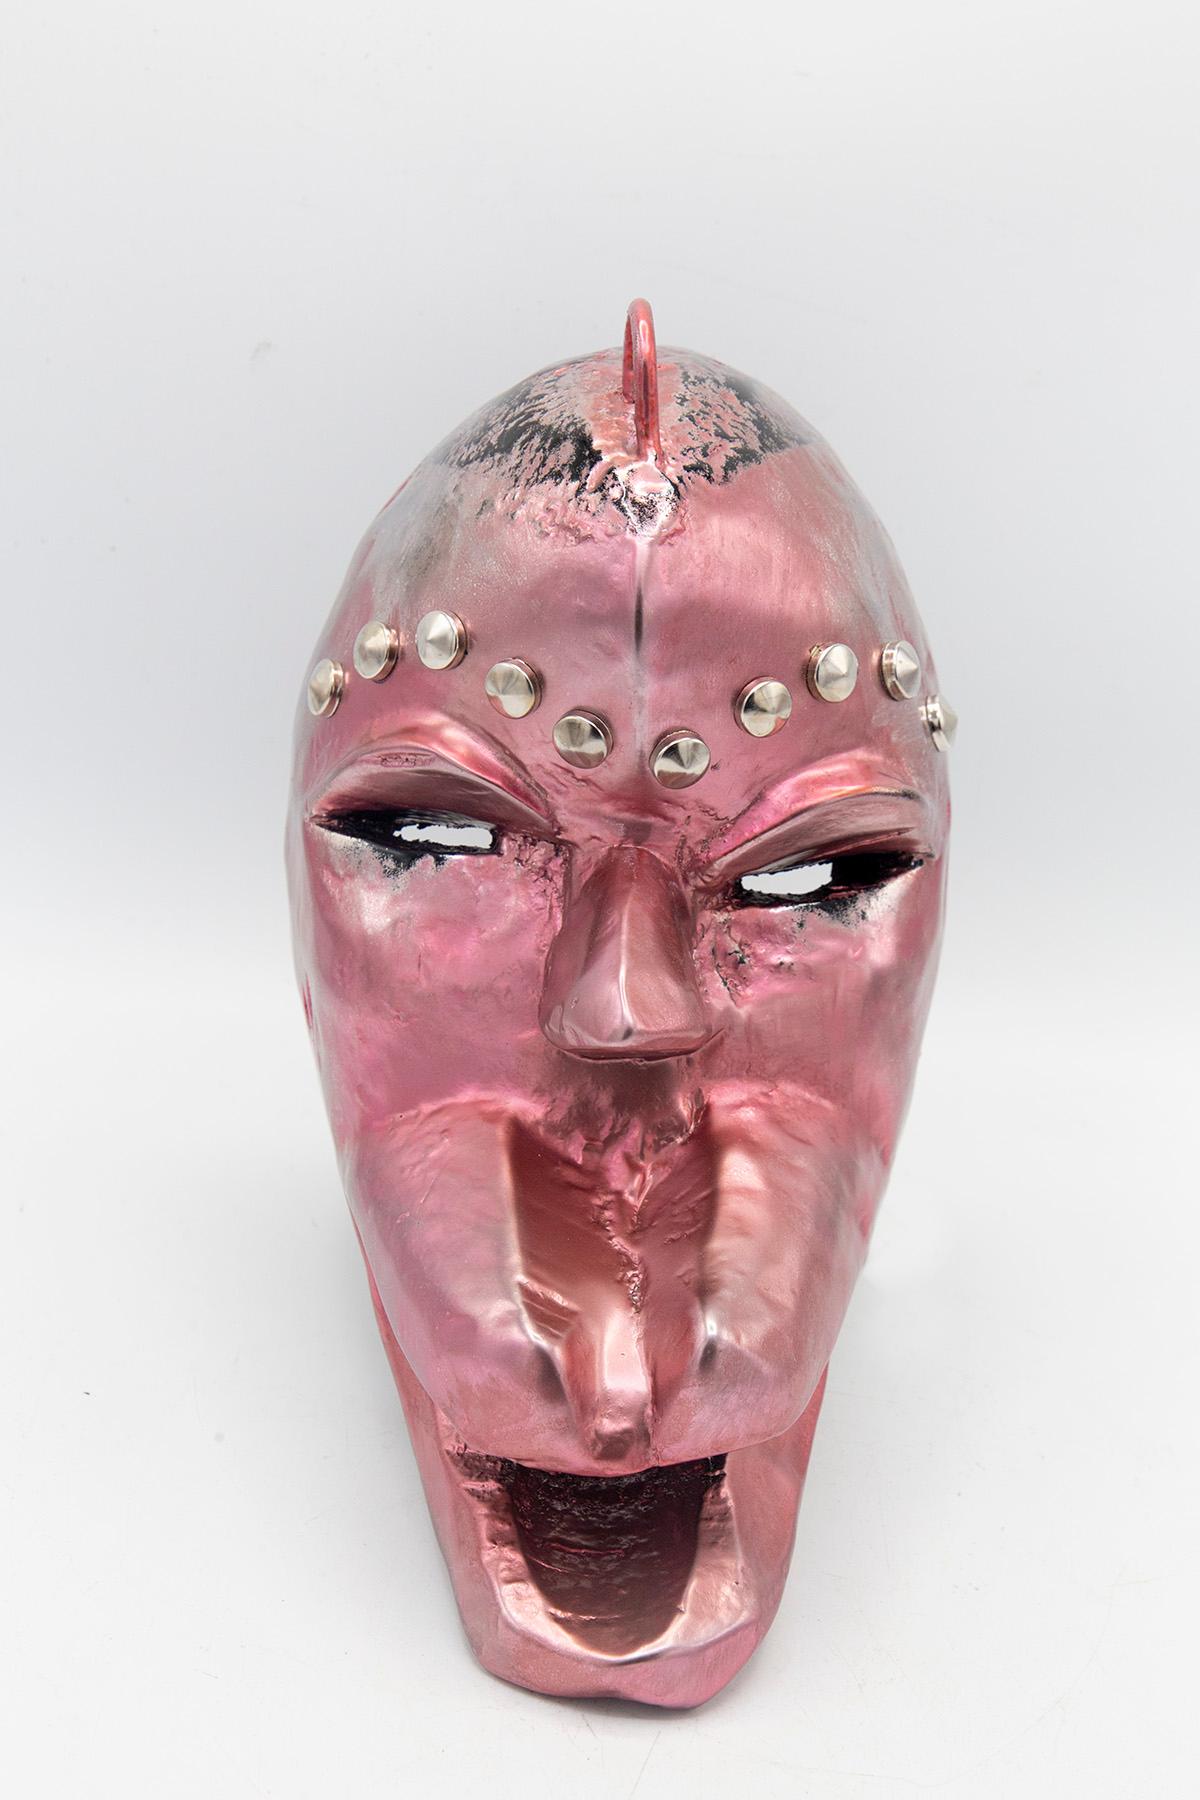 Einzigartige afrikanische Maske, geschaffen von dem Künstler Bomber Bax.
Die Maske stammt aus den frühen 1900er Jahren und wurde Ende 2022 vom Künstler überarbeitet und bemalt.
Der Künstler verwendete spezielle Metallic-Farben, um einen Mundeffekt